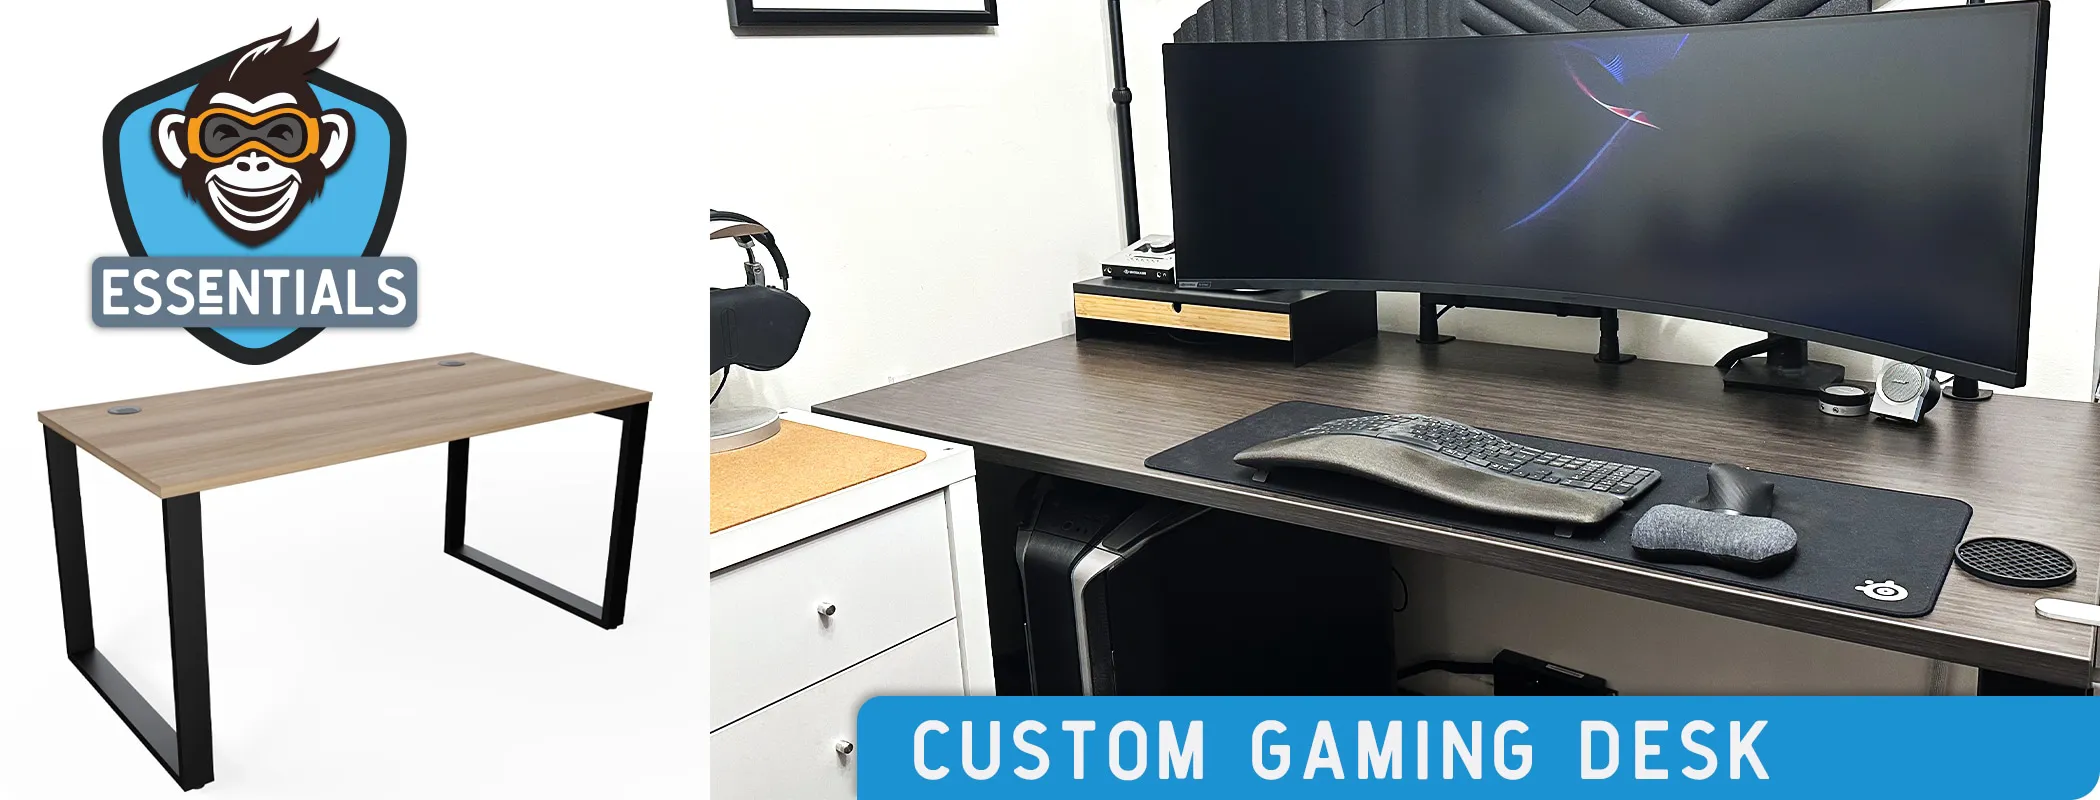 Essentials - Custom Gaming Desk